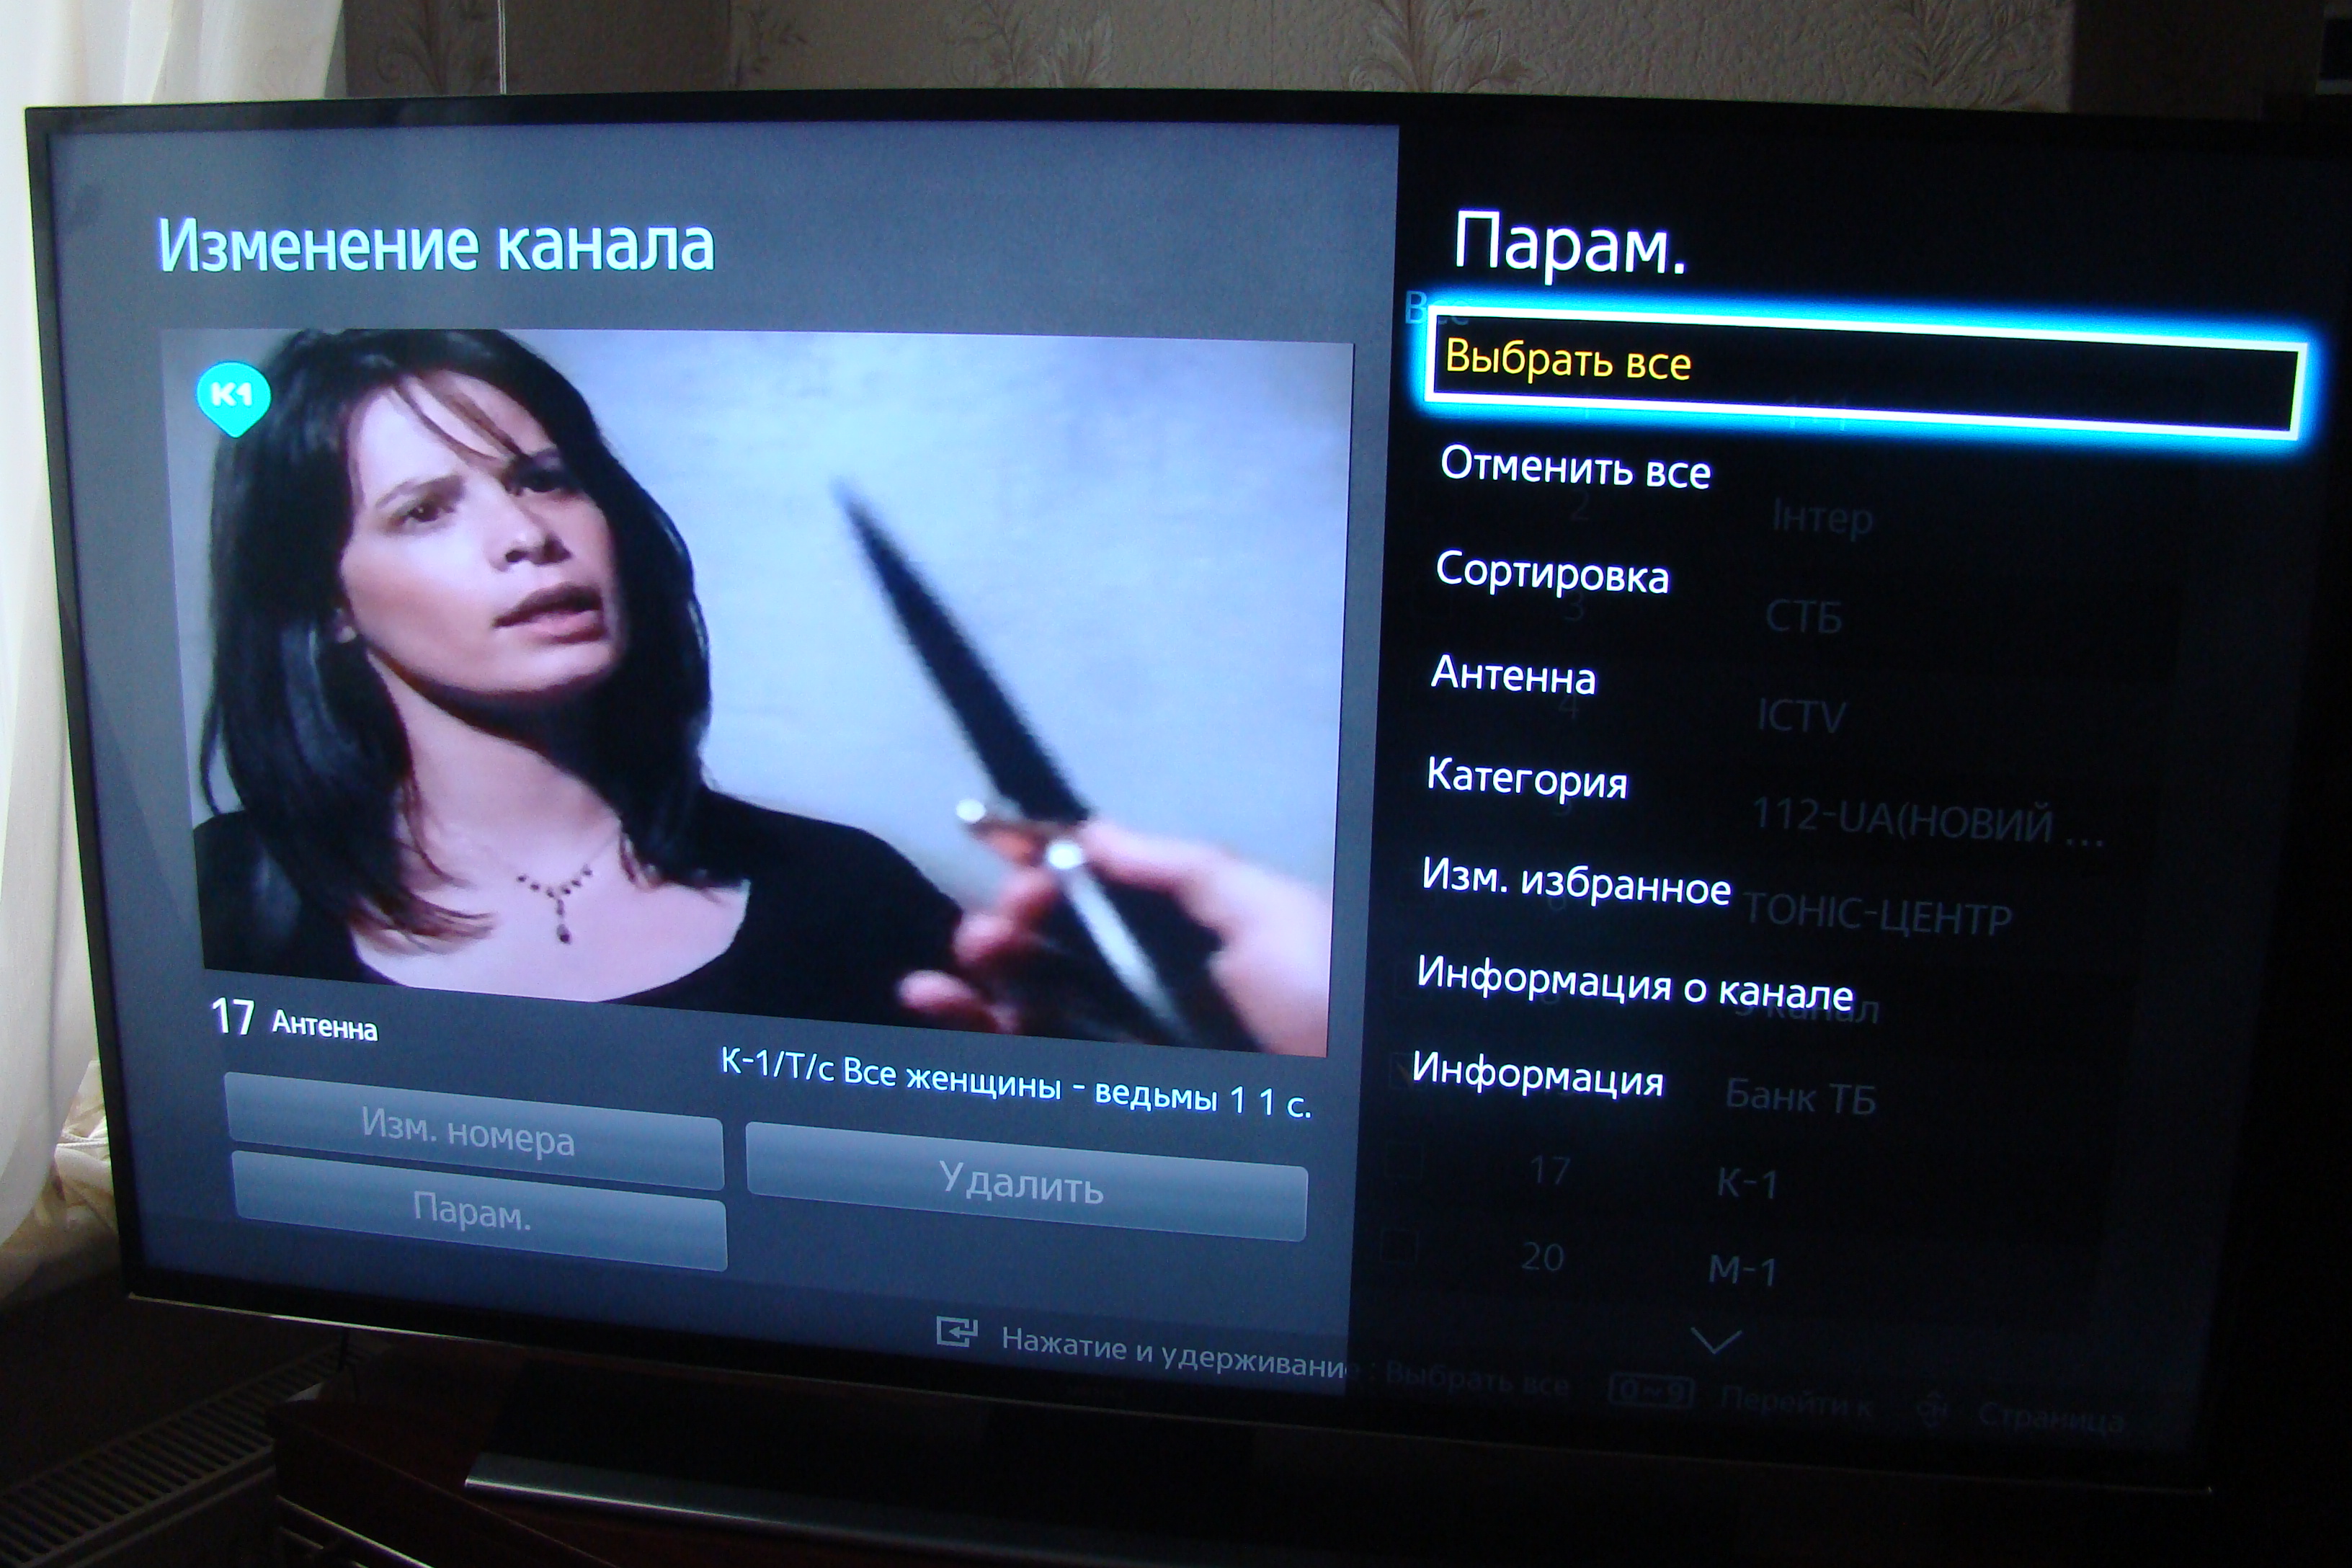 Телевизор ввк отзывы. Сигнал закодирован на телевизоре Samsung. Как найти код для редактирования каналов на телевизоре.